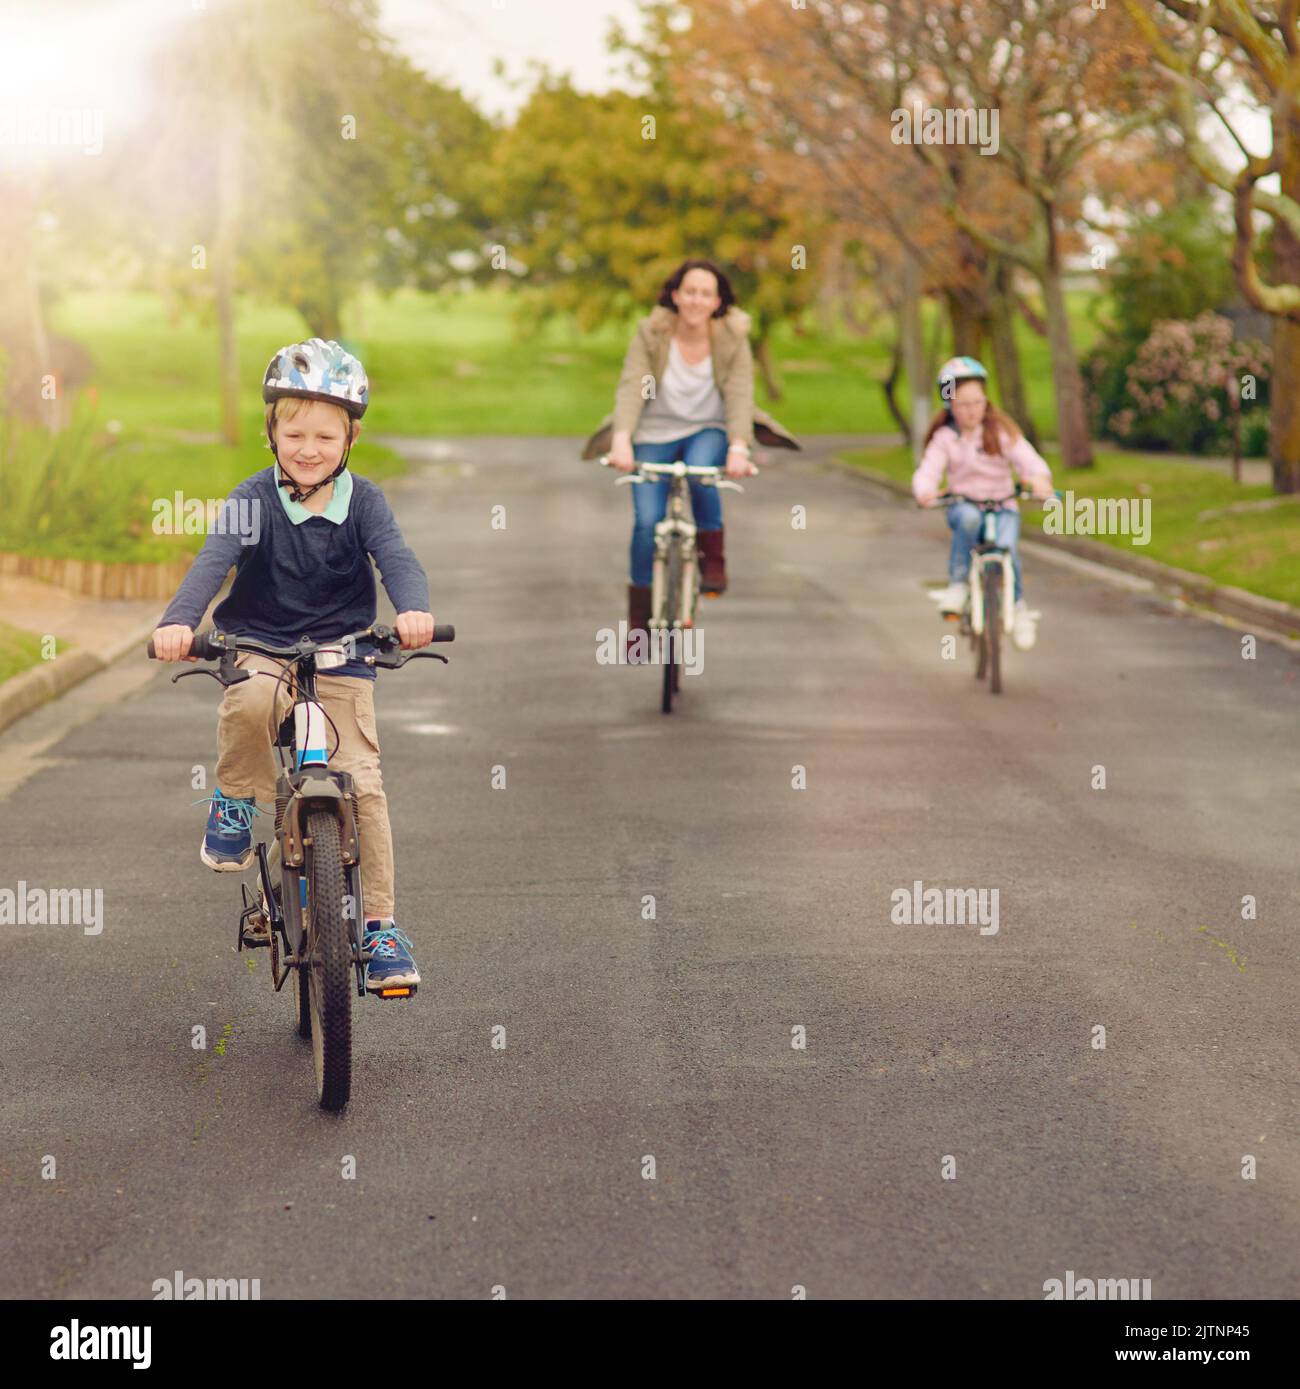 Aktive Familien sind glückliche Familien. Eine Mutter und ihre zwei kleinen Kinder reiten draußen mit dem Fahrrad. Stockfoto